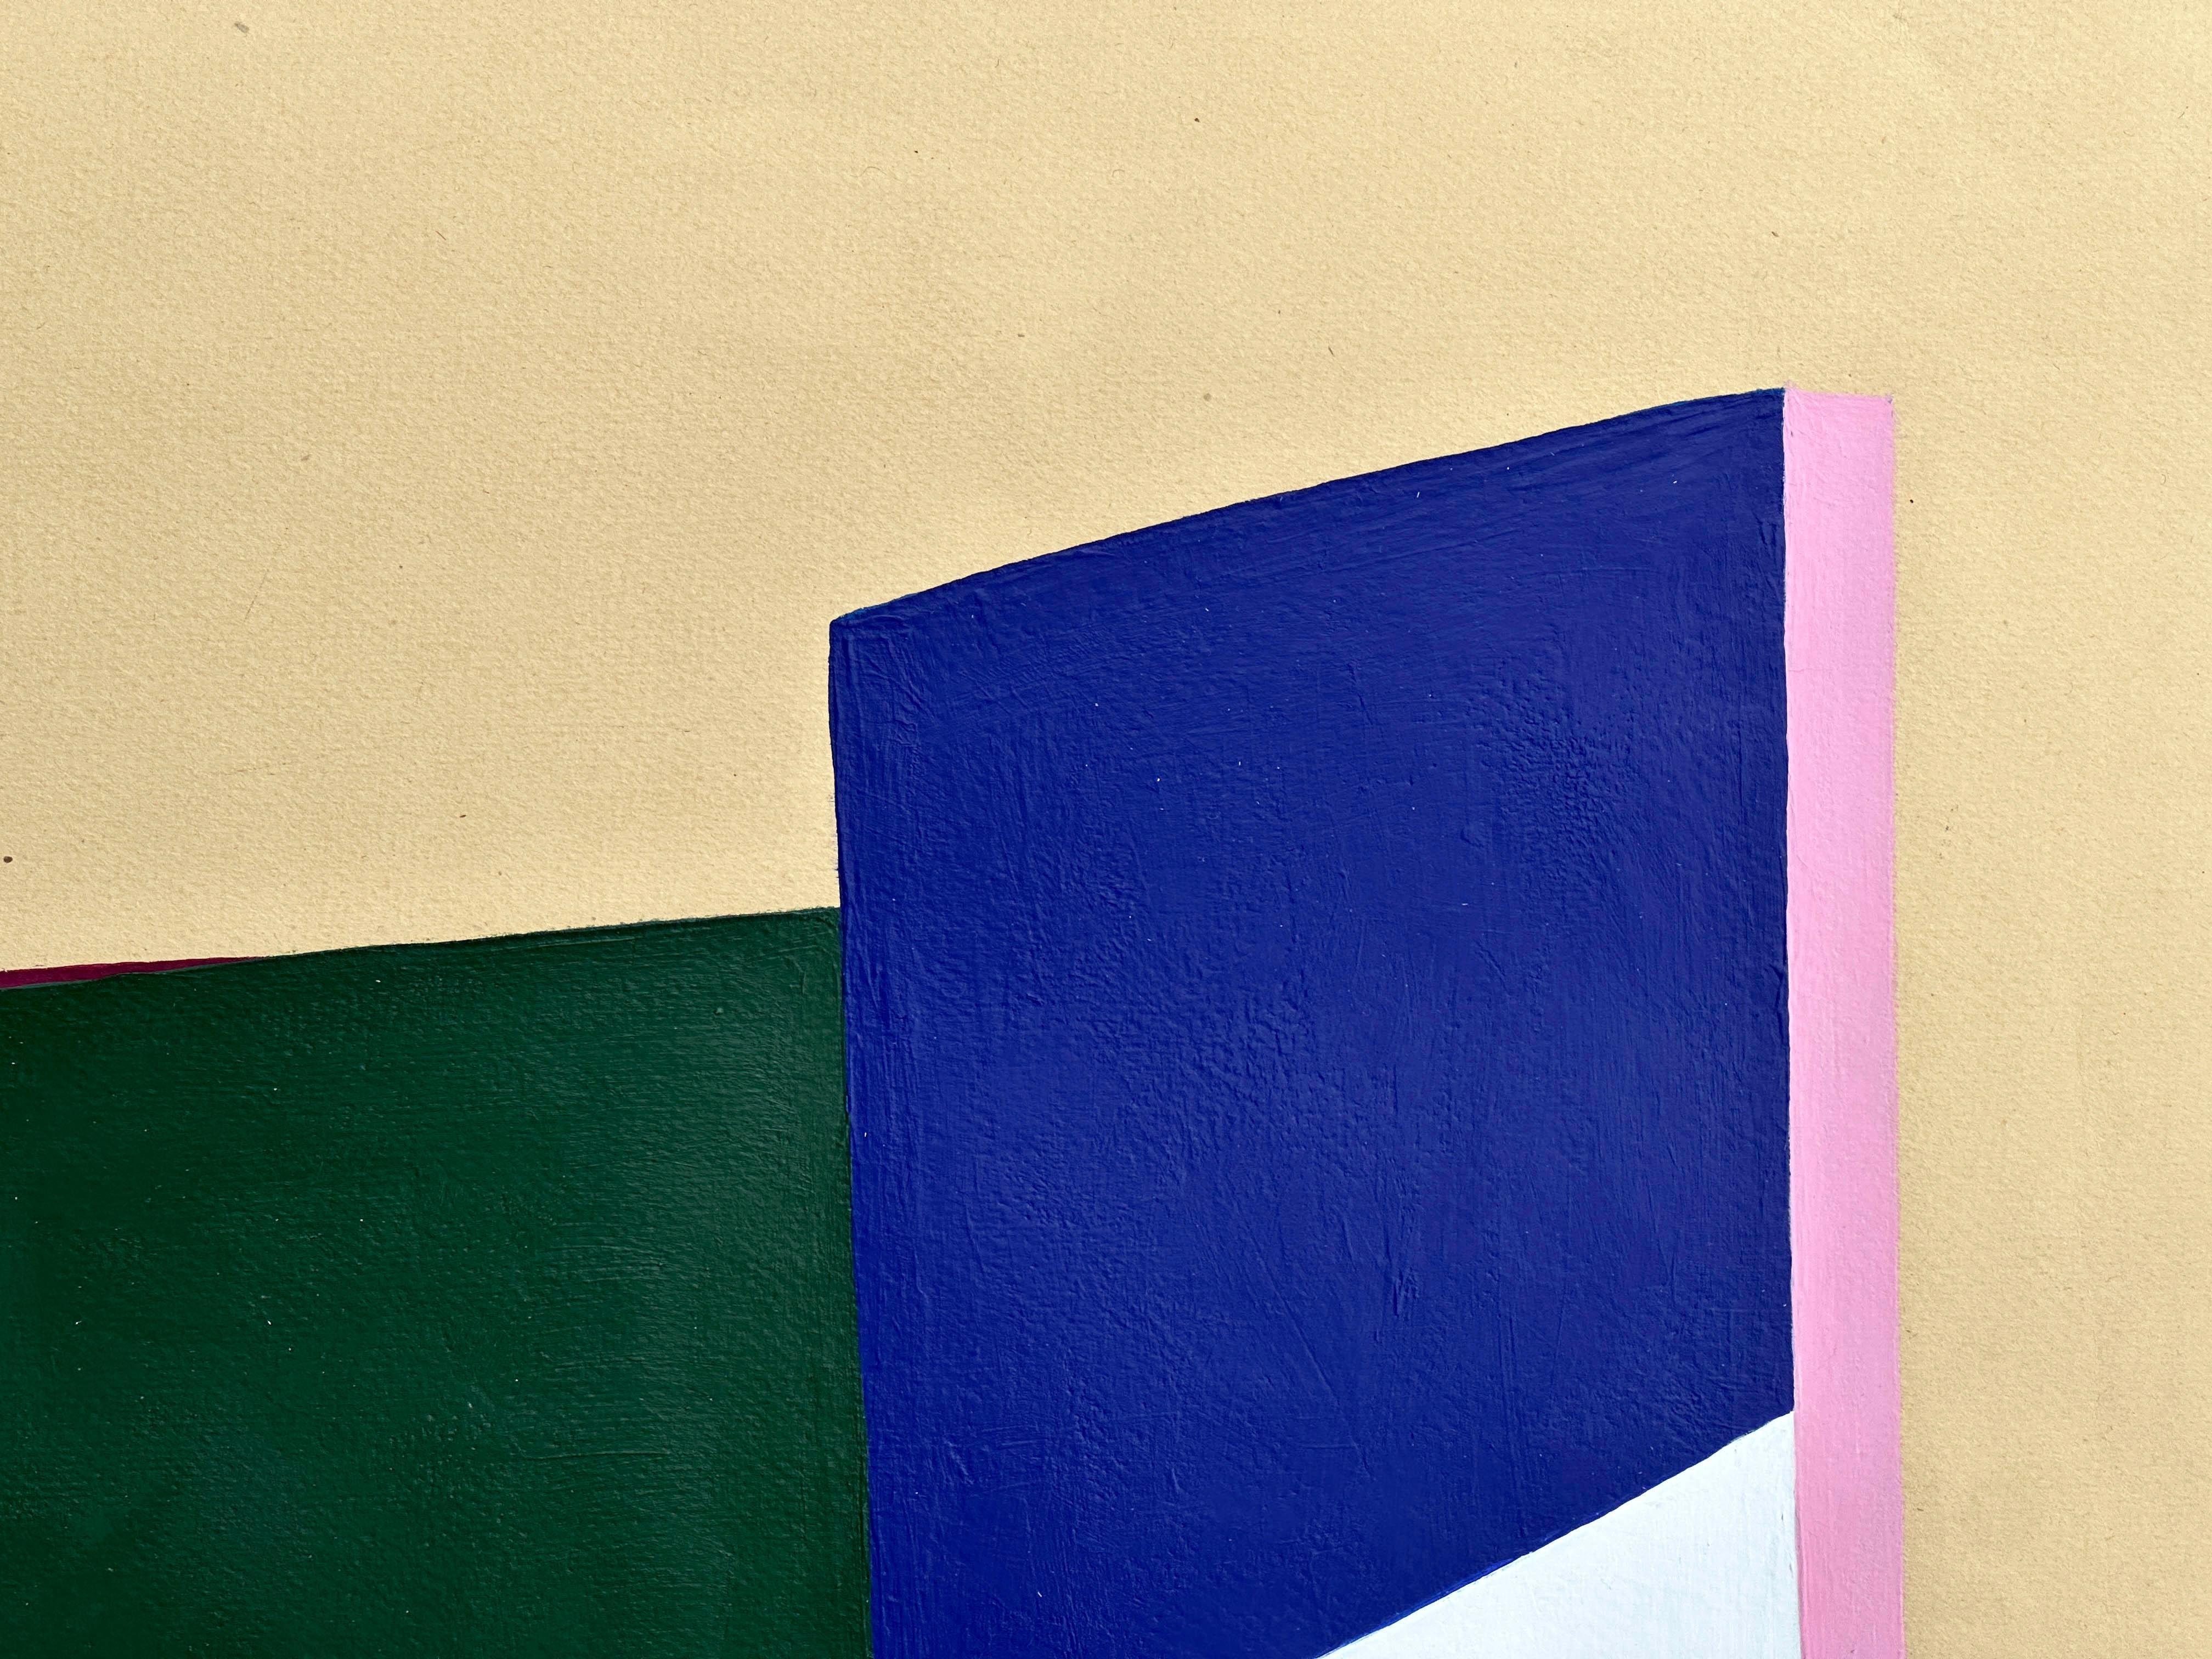 Réalisée en 2023 par Amanda Andersen, cette peinture abstraite géométrique sur papier fait partie d'une série de neuf œuvres d'art minimales dont la simplicité visuelle s'inspire du brutalisme.  
Brutalisme ; style caractérisé par une esthétique